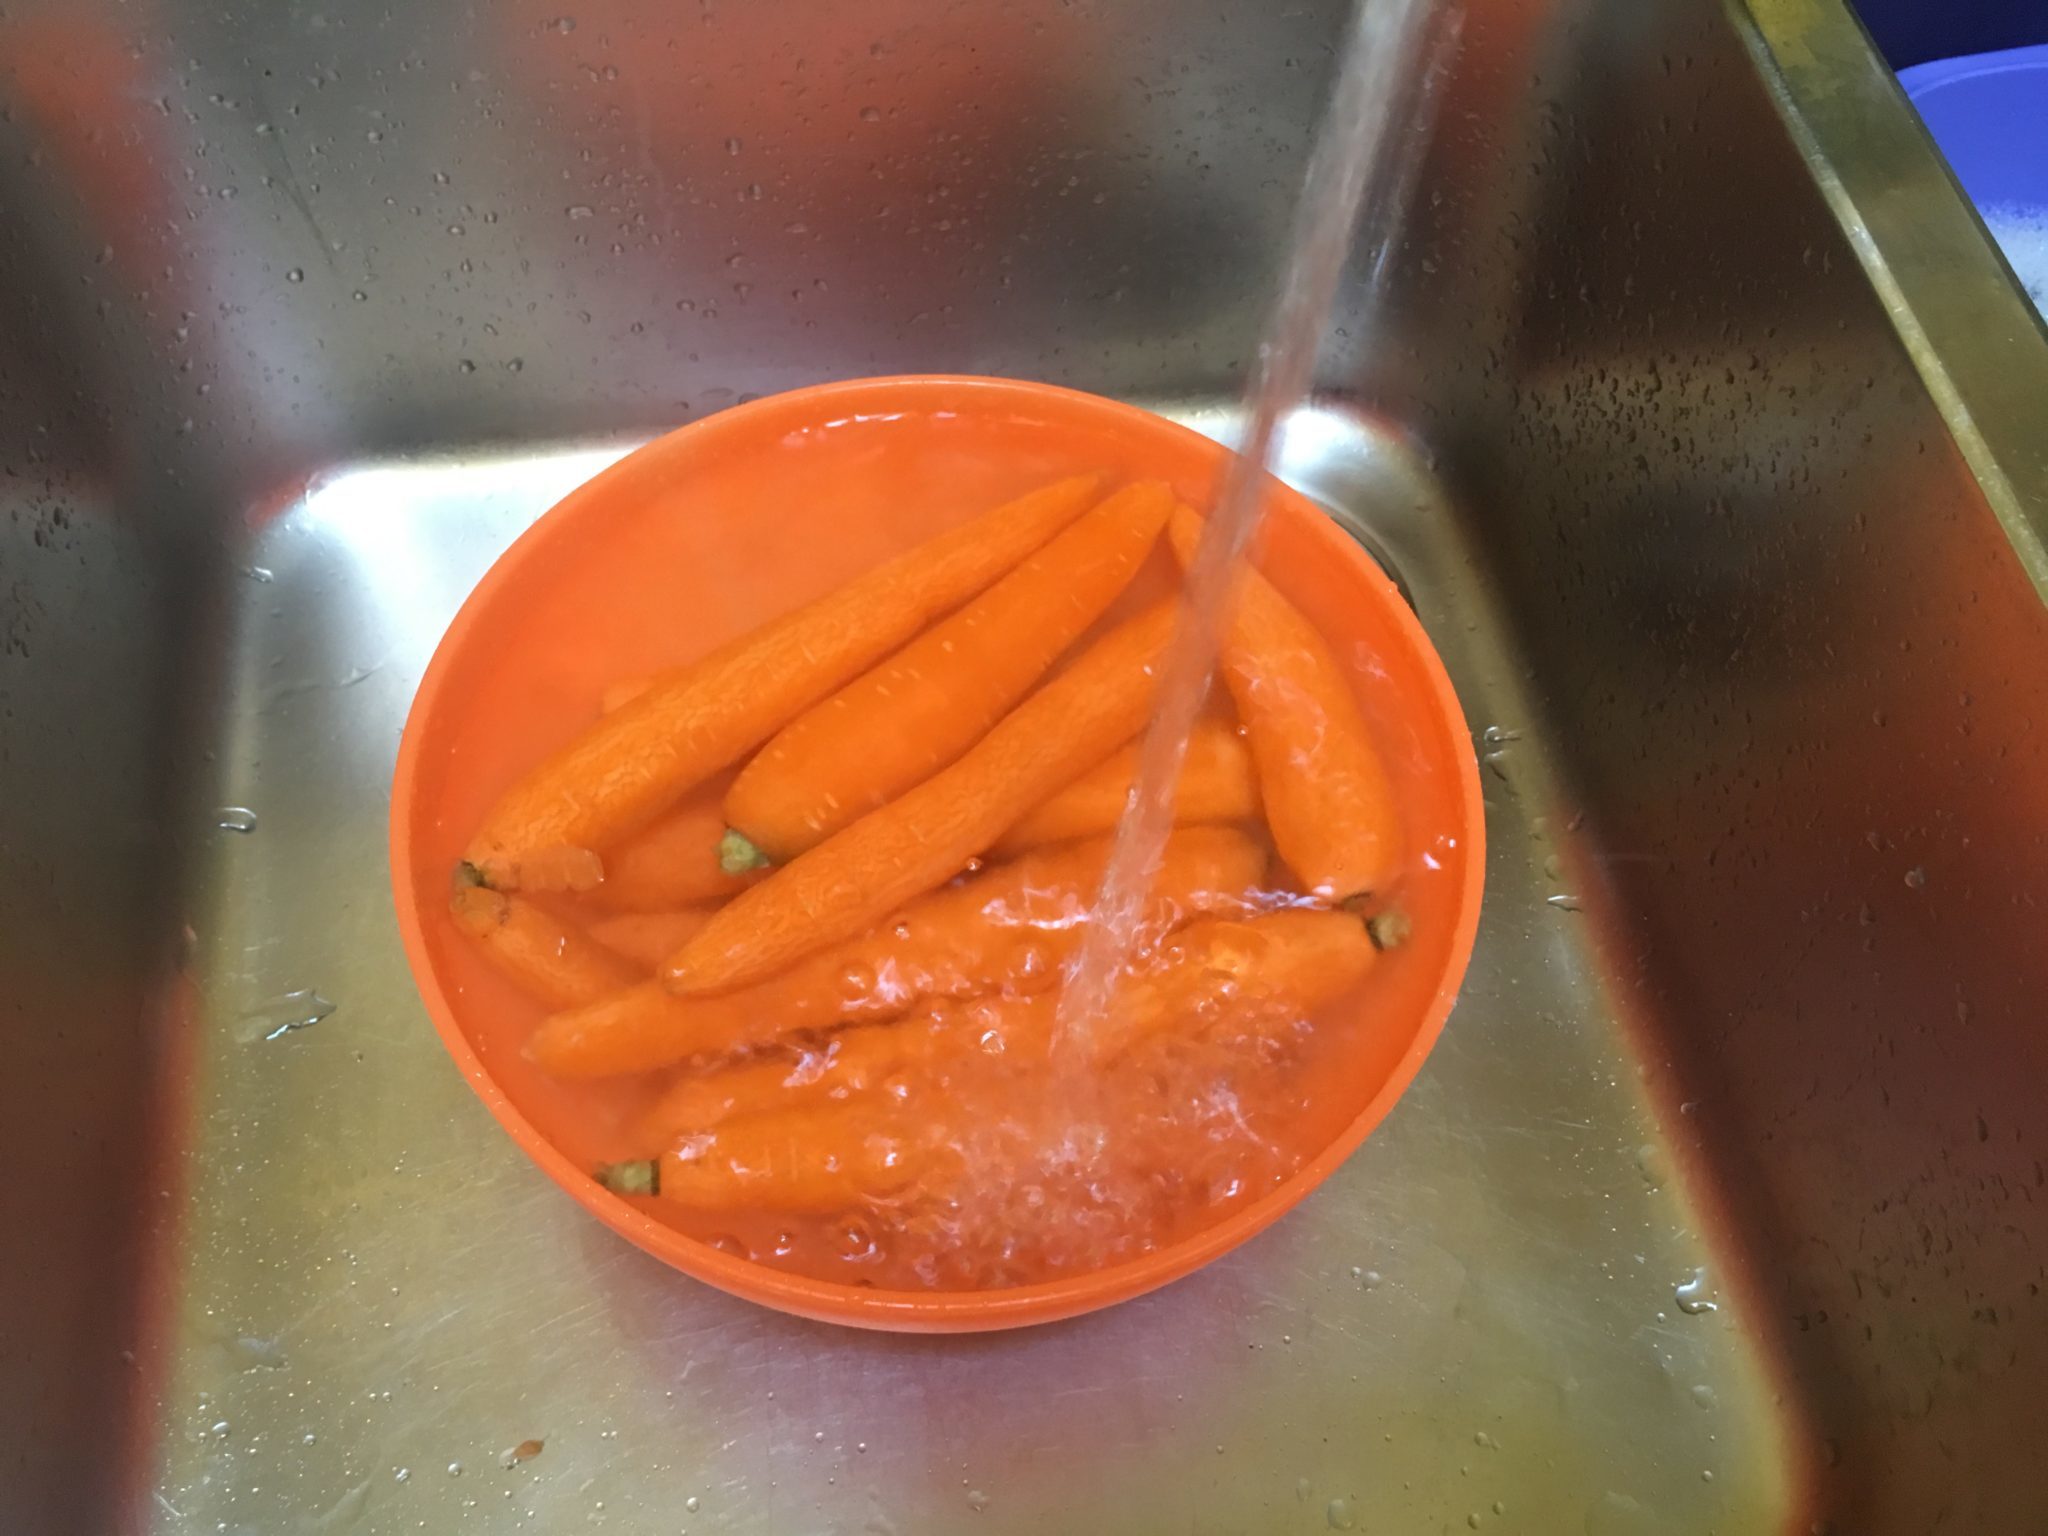 Carote sfritte - le carote lavate